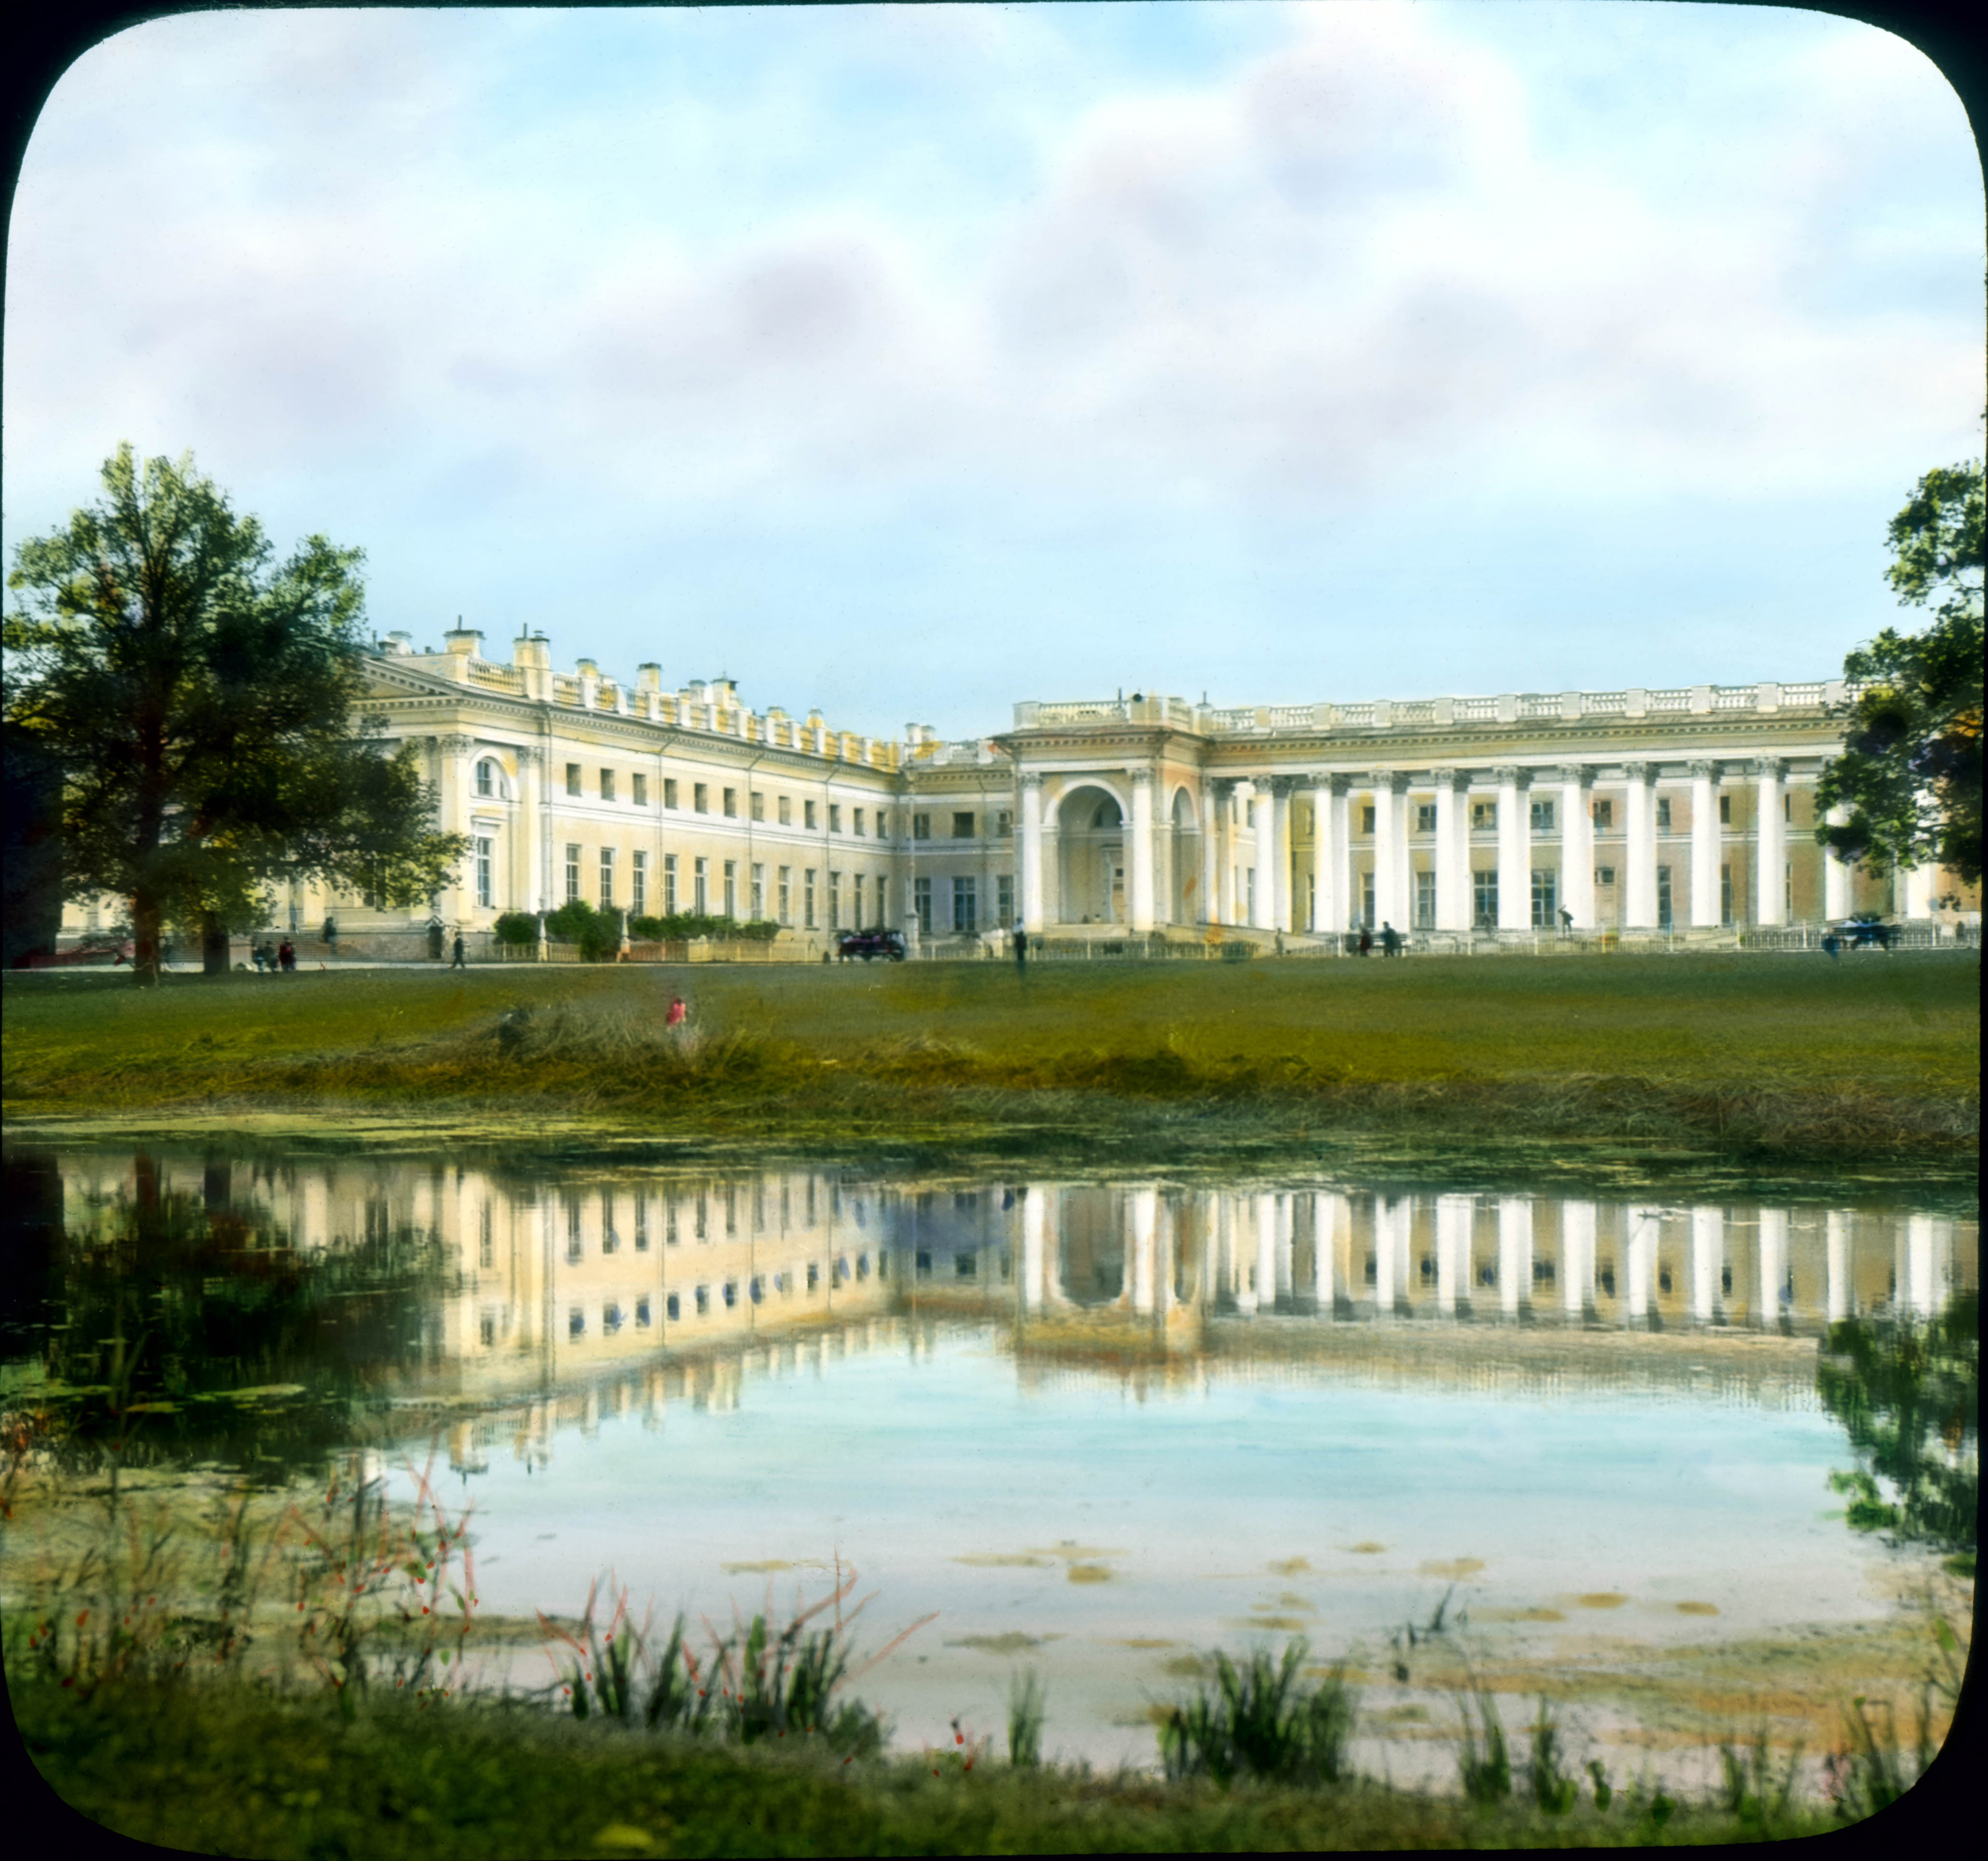 Alexander Palace exterior - Facade view